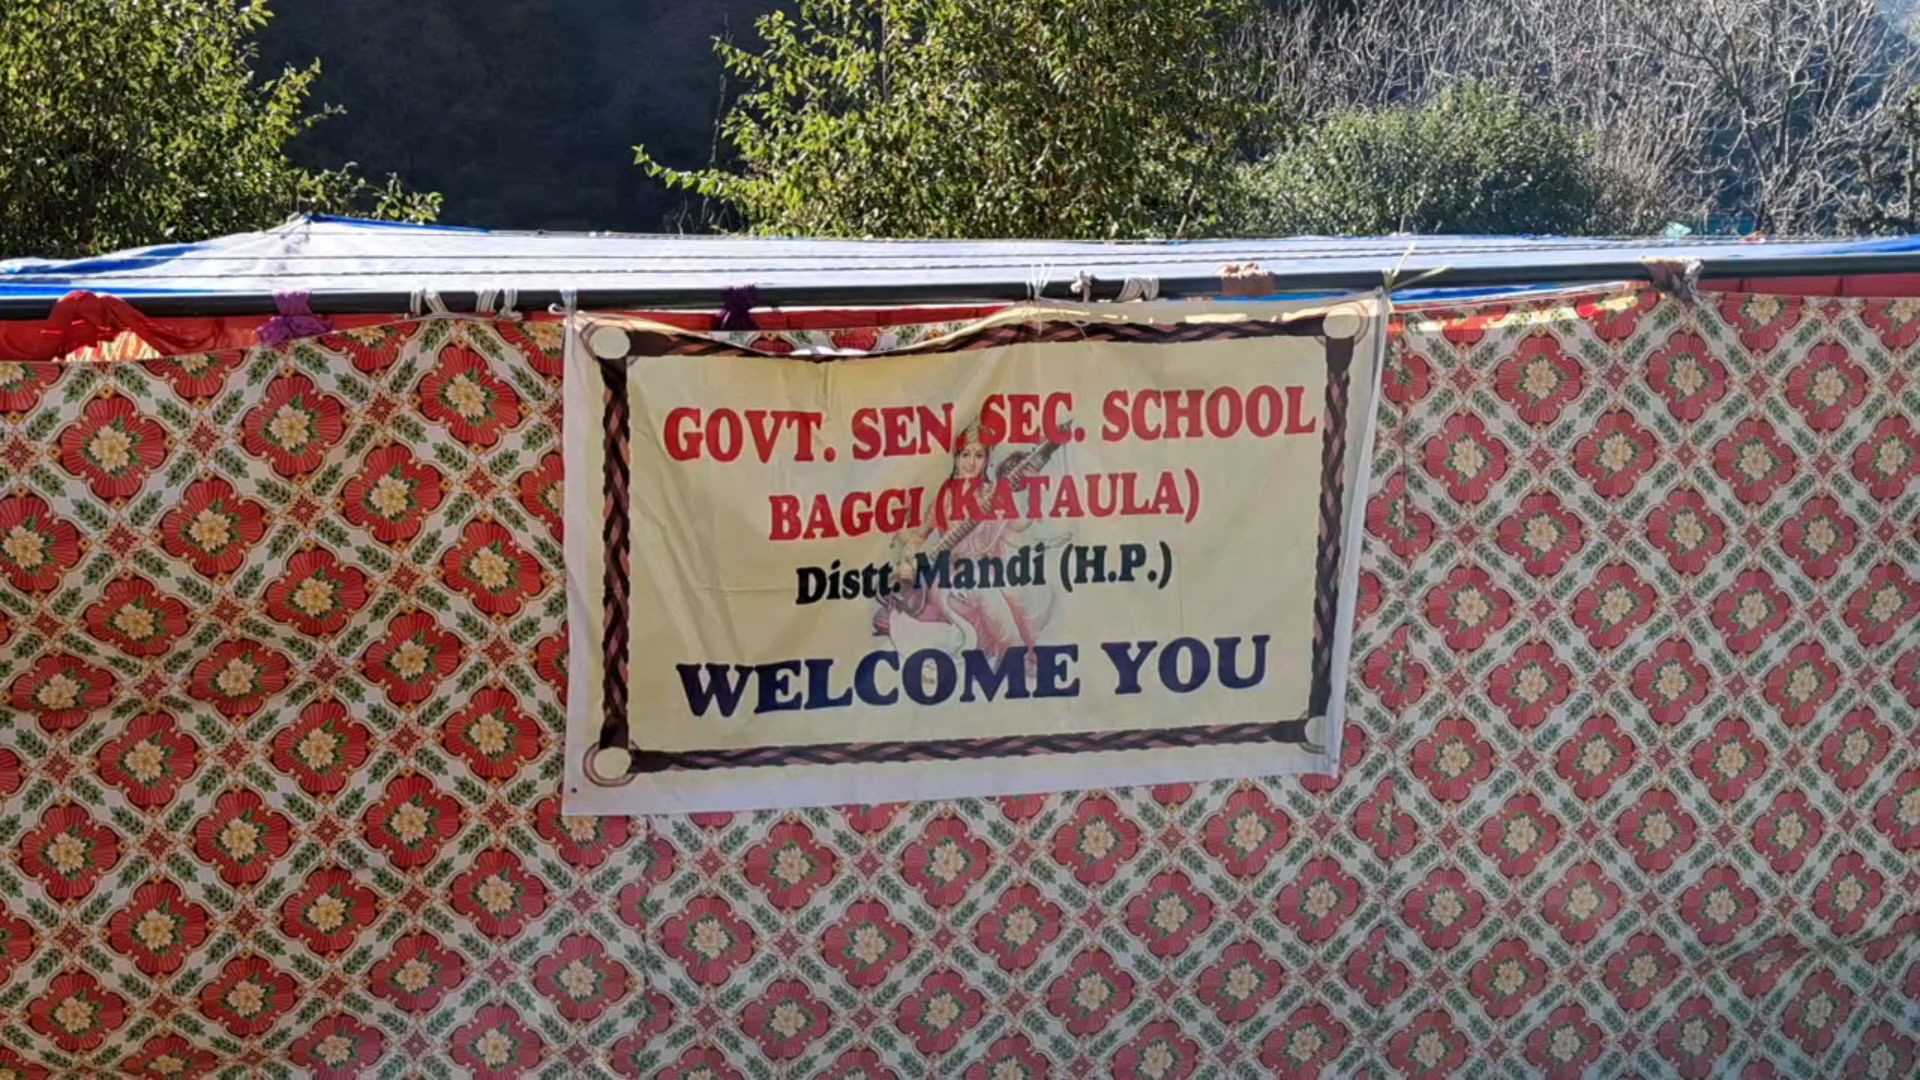 Baggi School Running under Tent in Mandi